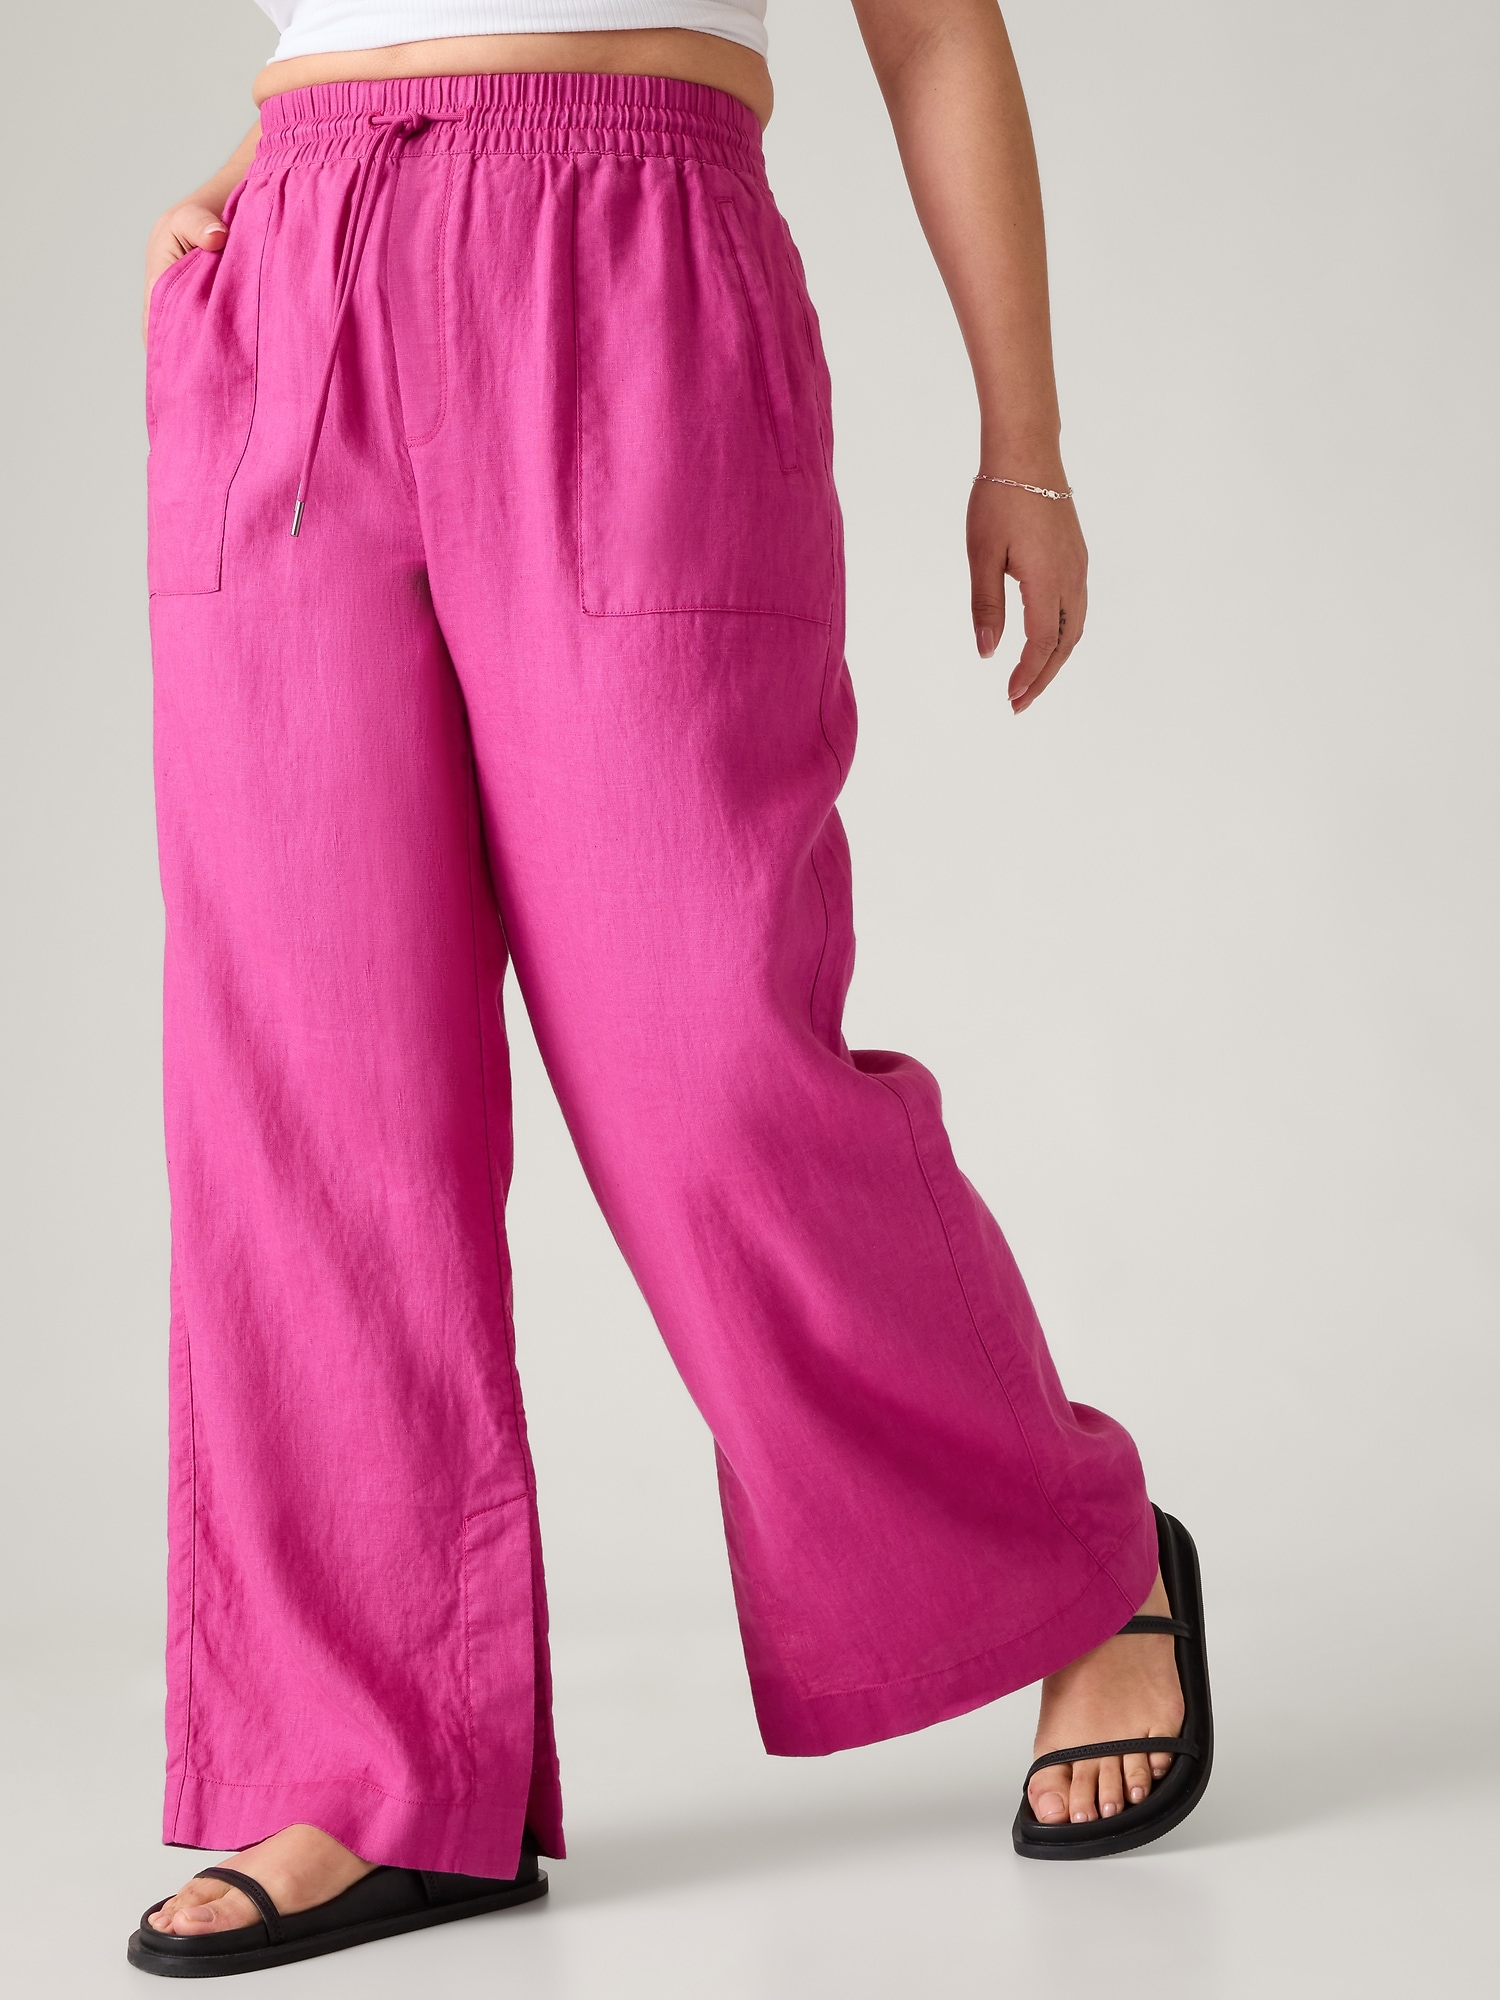 Linen Pants / Linen Wide Leg Pants/summer Linen Pants /linen Pants Women / linen Elastic Waist Pants/90s Linen Pants -  Canada